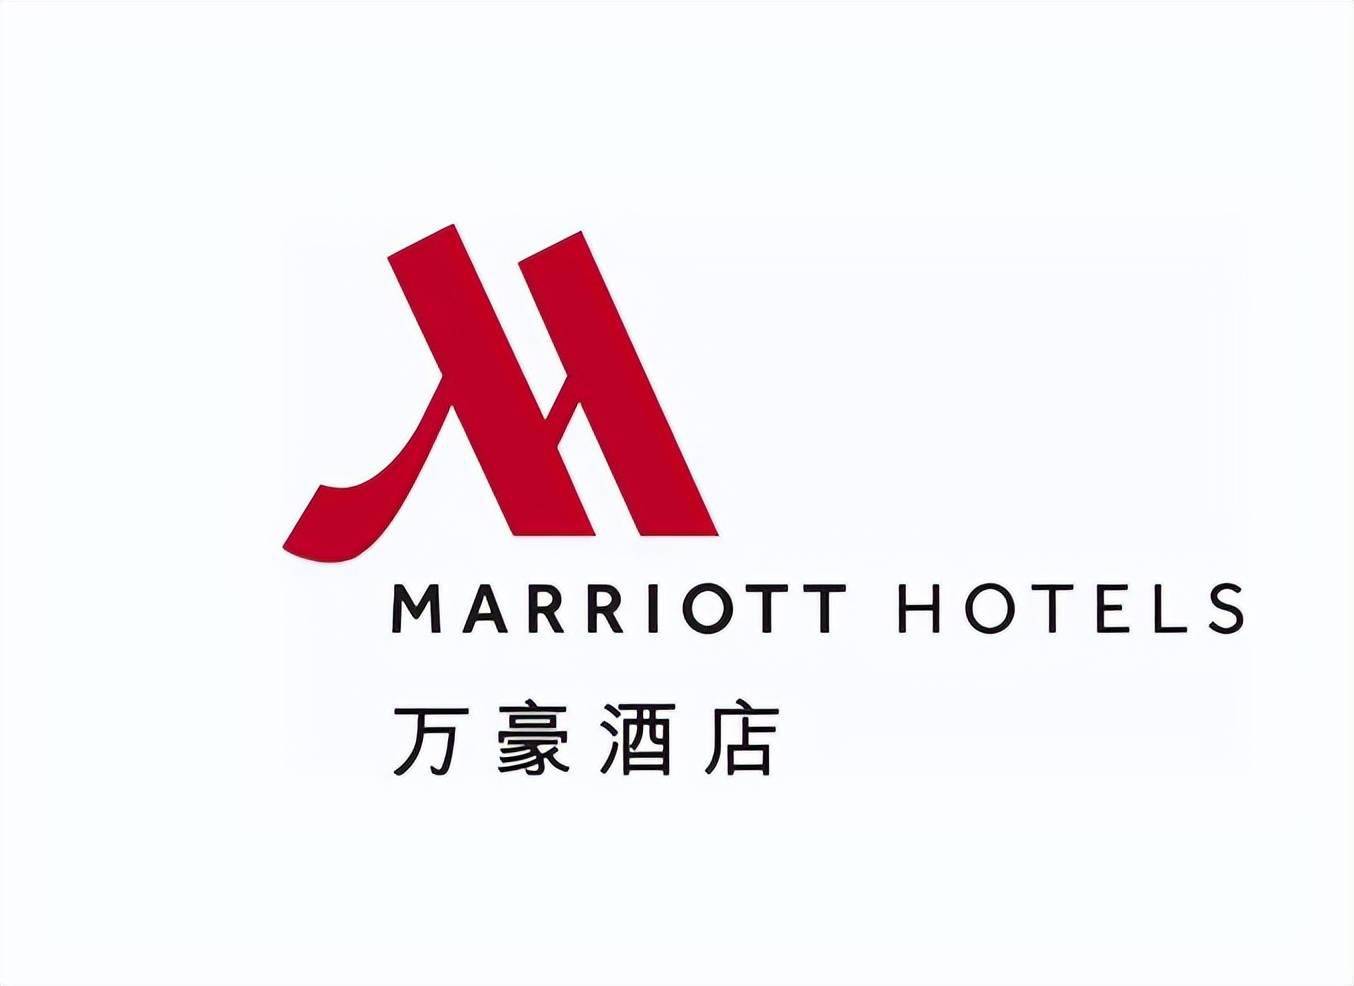 这个logo和多家知名品牌logo十分相似,比如,华纳唱片,万豪酒店等